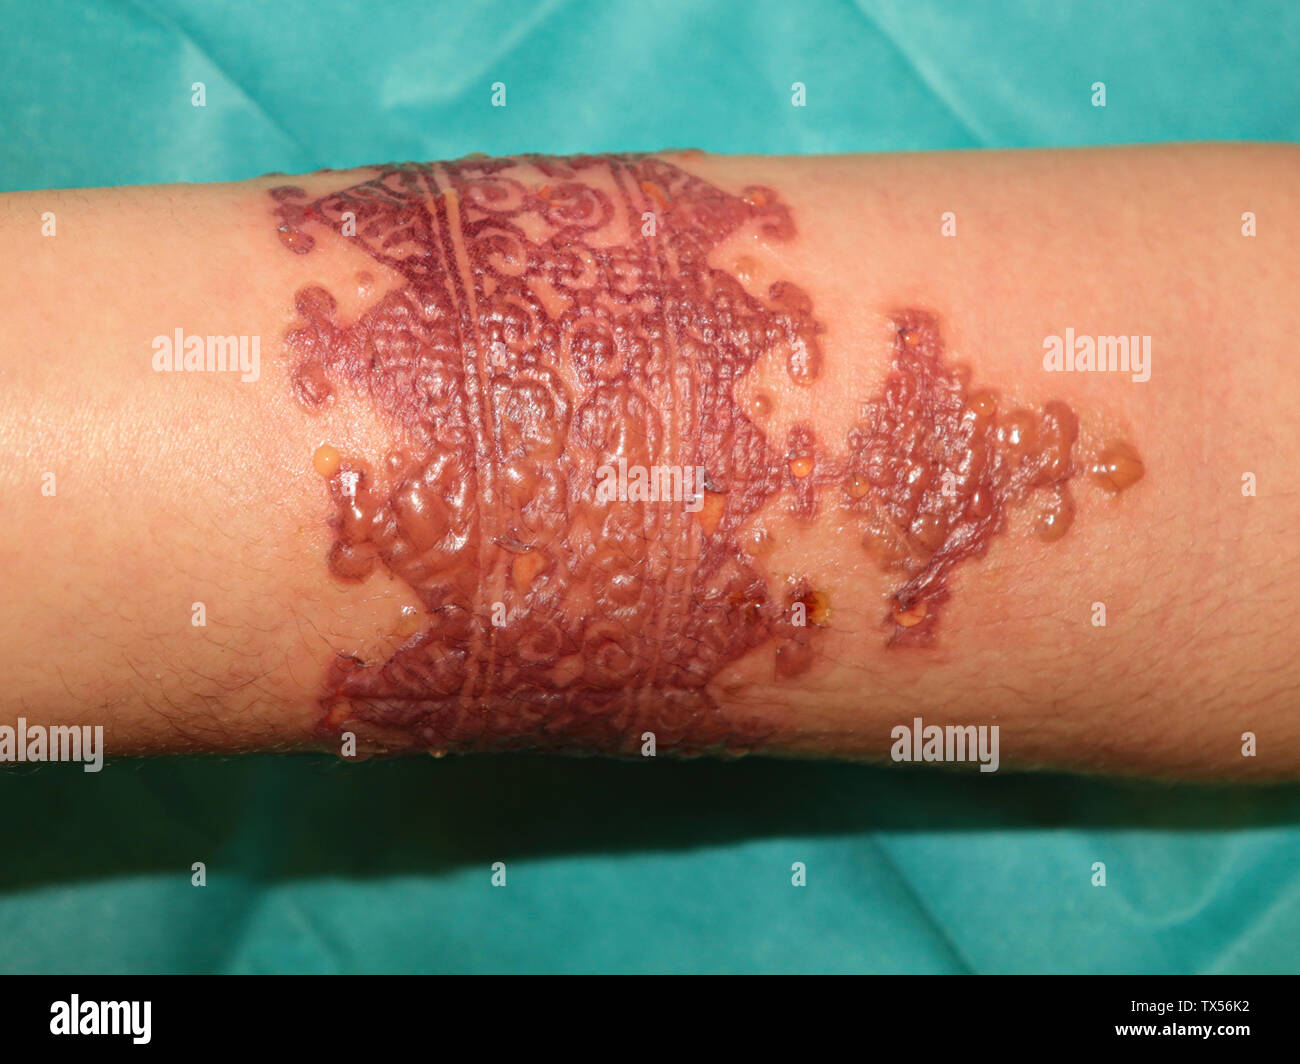 Réaction allergique ponderosa après tatouage onu au henné Foto Stock